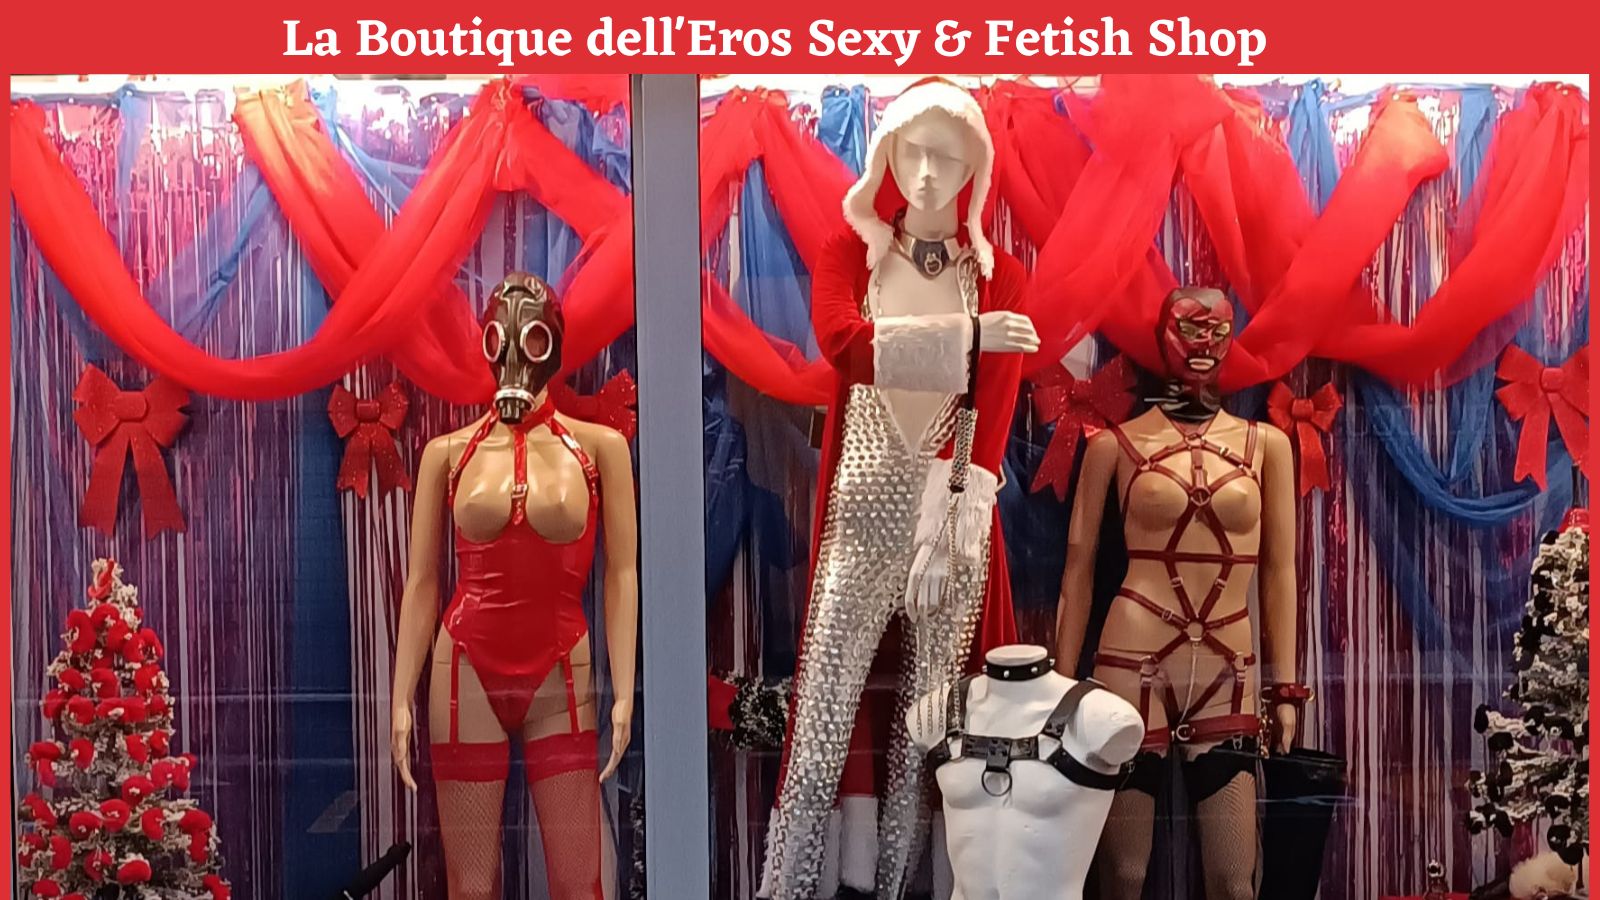 Aperti-Immacolata-Boutique-Eros-Sexy-Fetish-Shop-Bologna-02